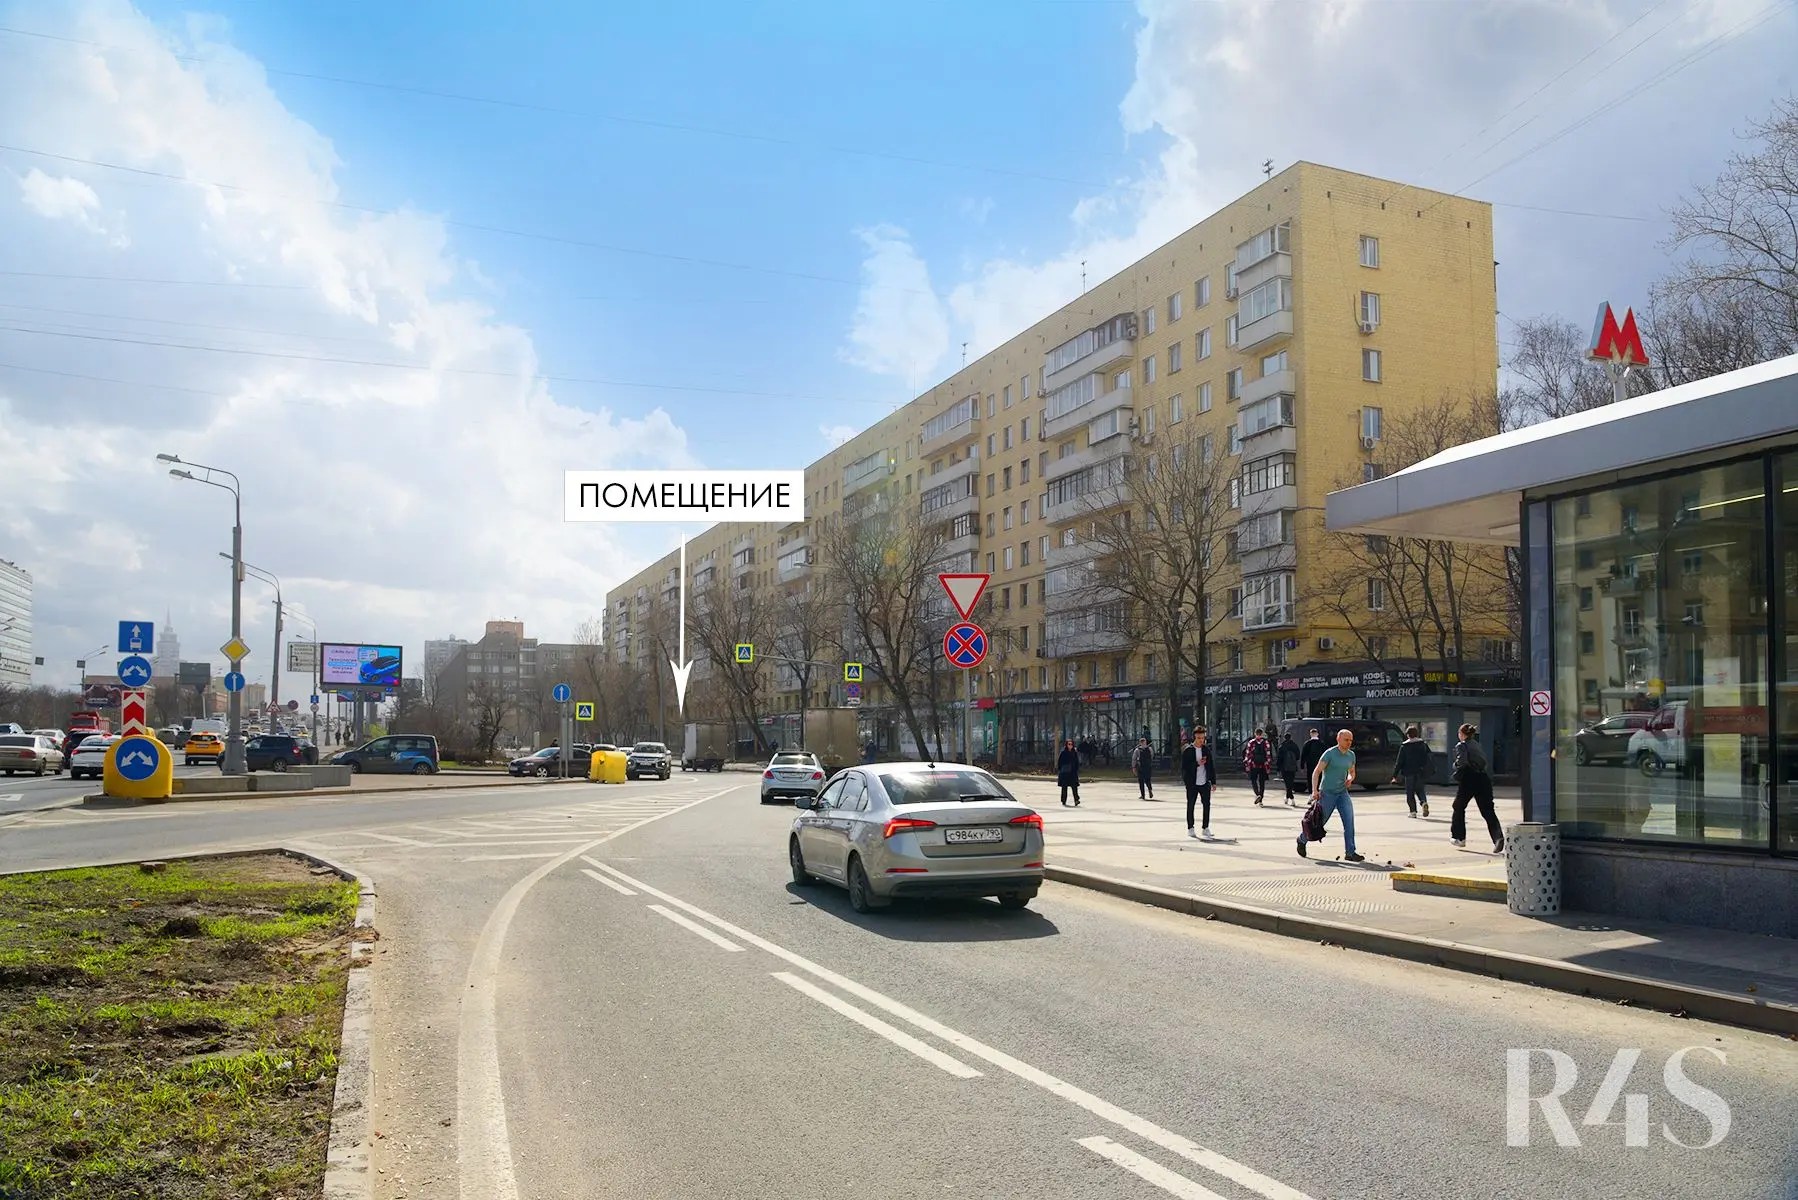 Аренда торгового помещения площадью 223.1 м2 в Москве: Ленинградское шоссе, 9к1 R4S | Realty4Sale